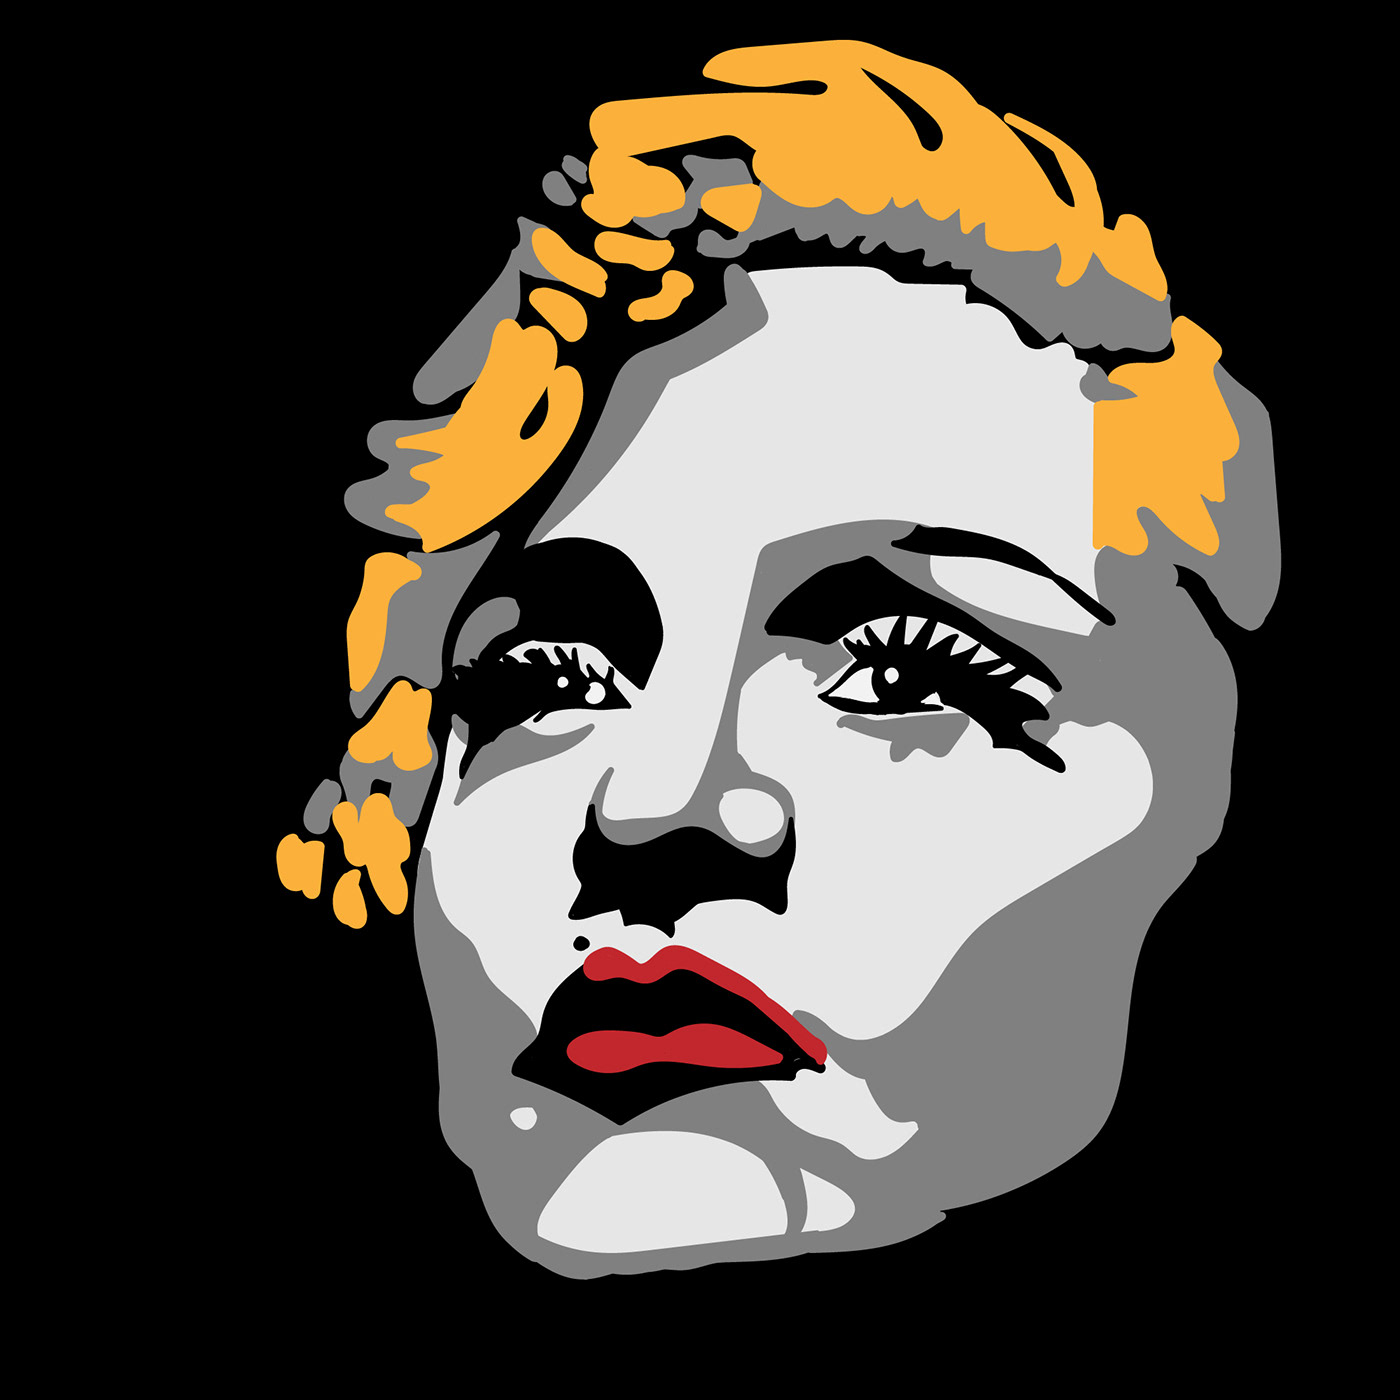 famous Ilustración vectorial ladies maddona Marilyn Monroe Pop Art portrait retratos Rihanna women